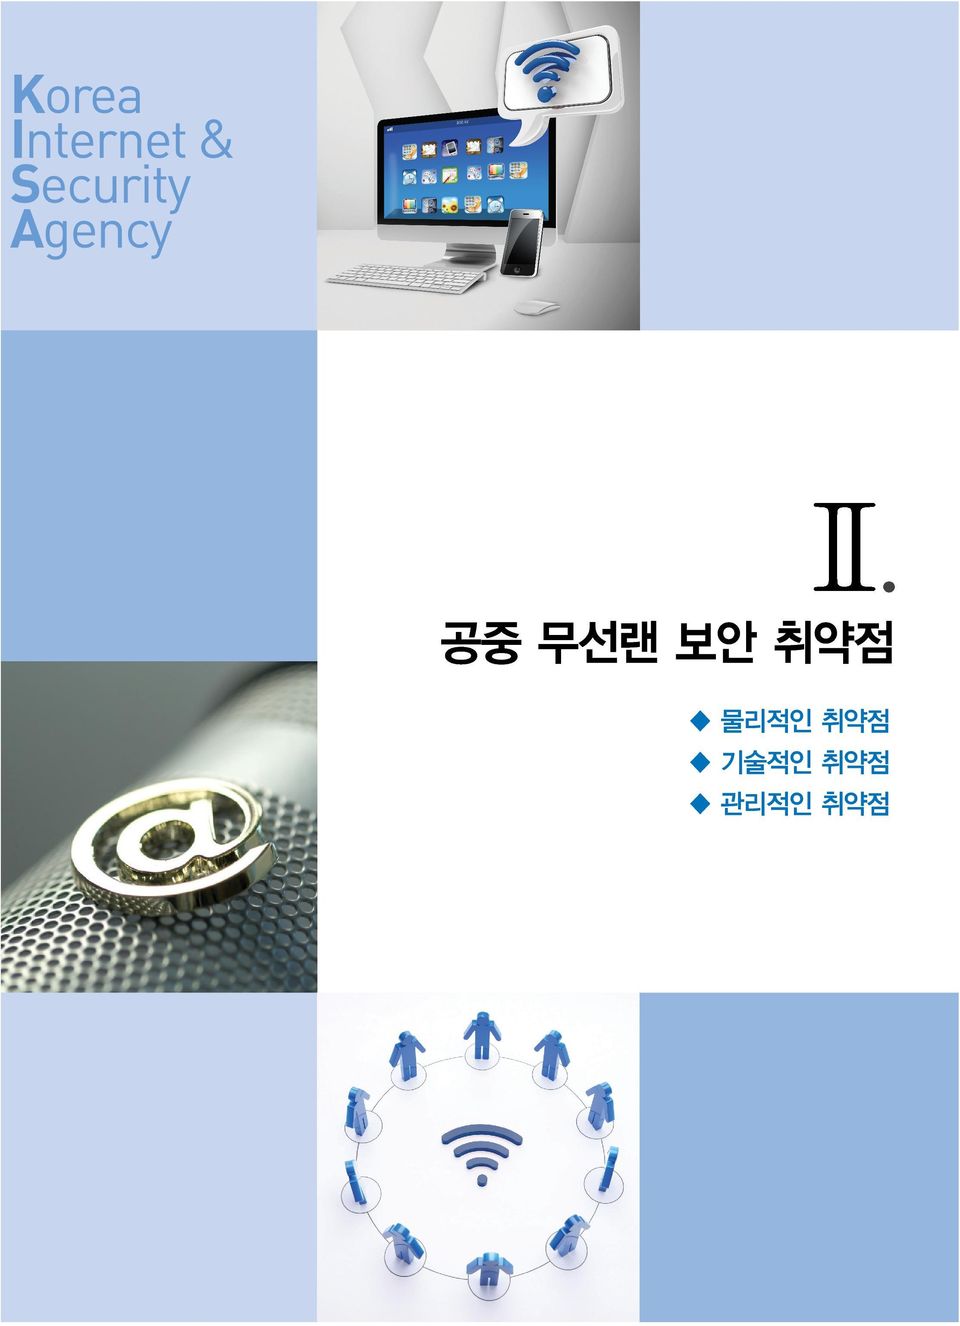 Korea Internet & Security